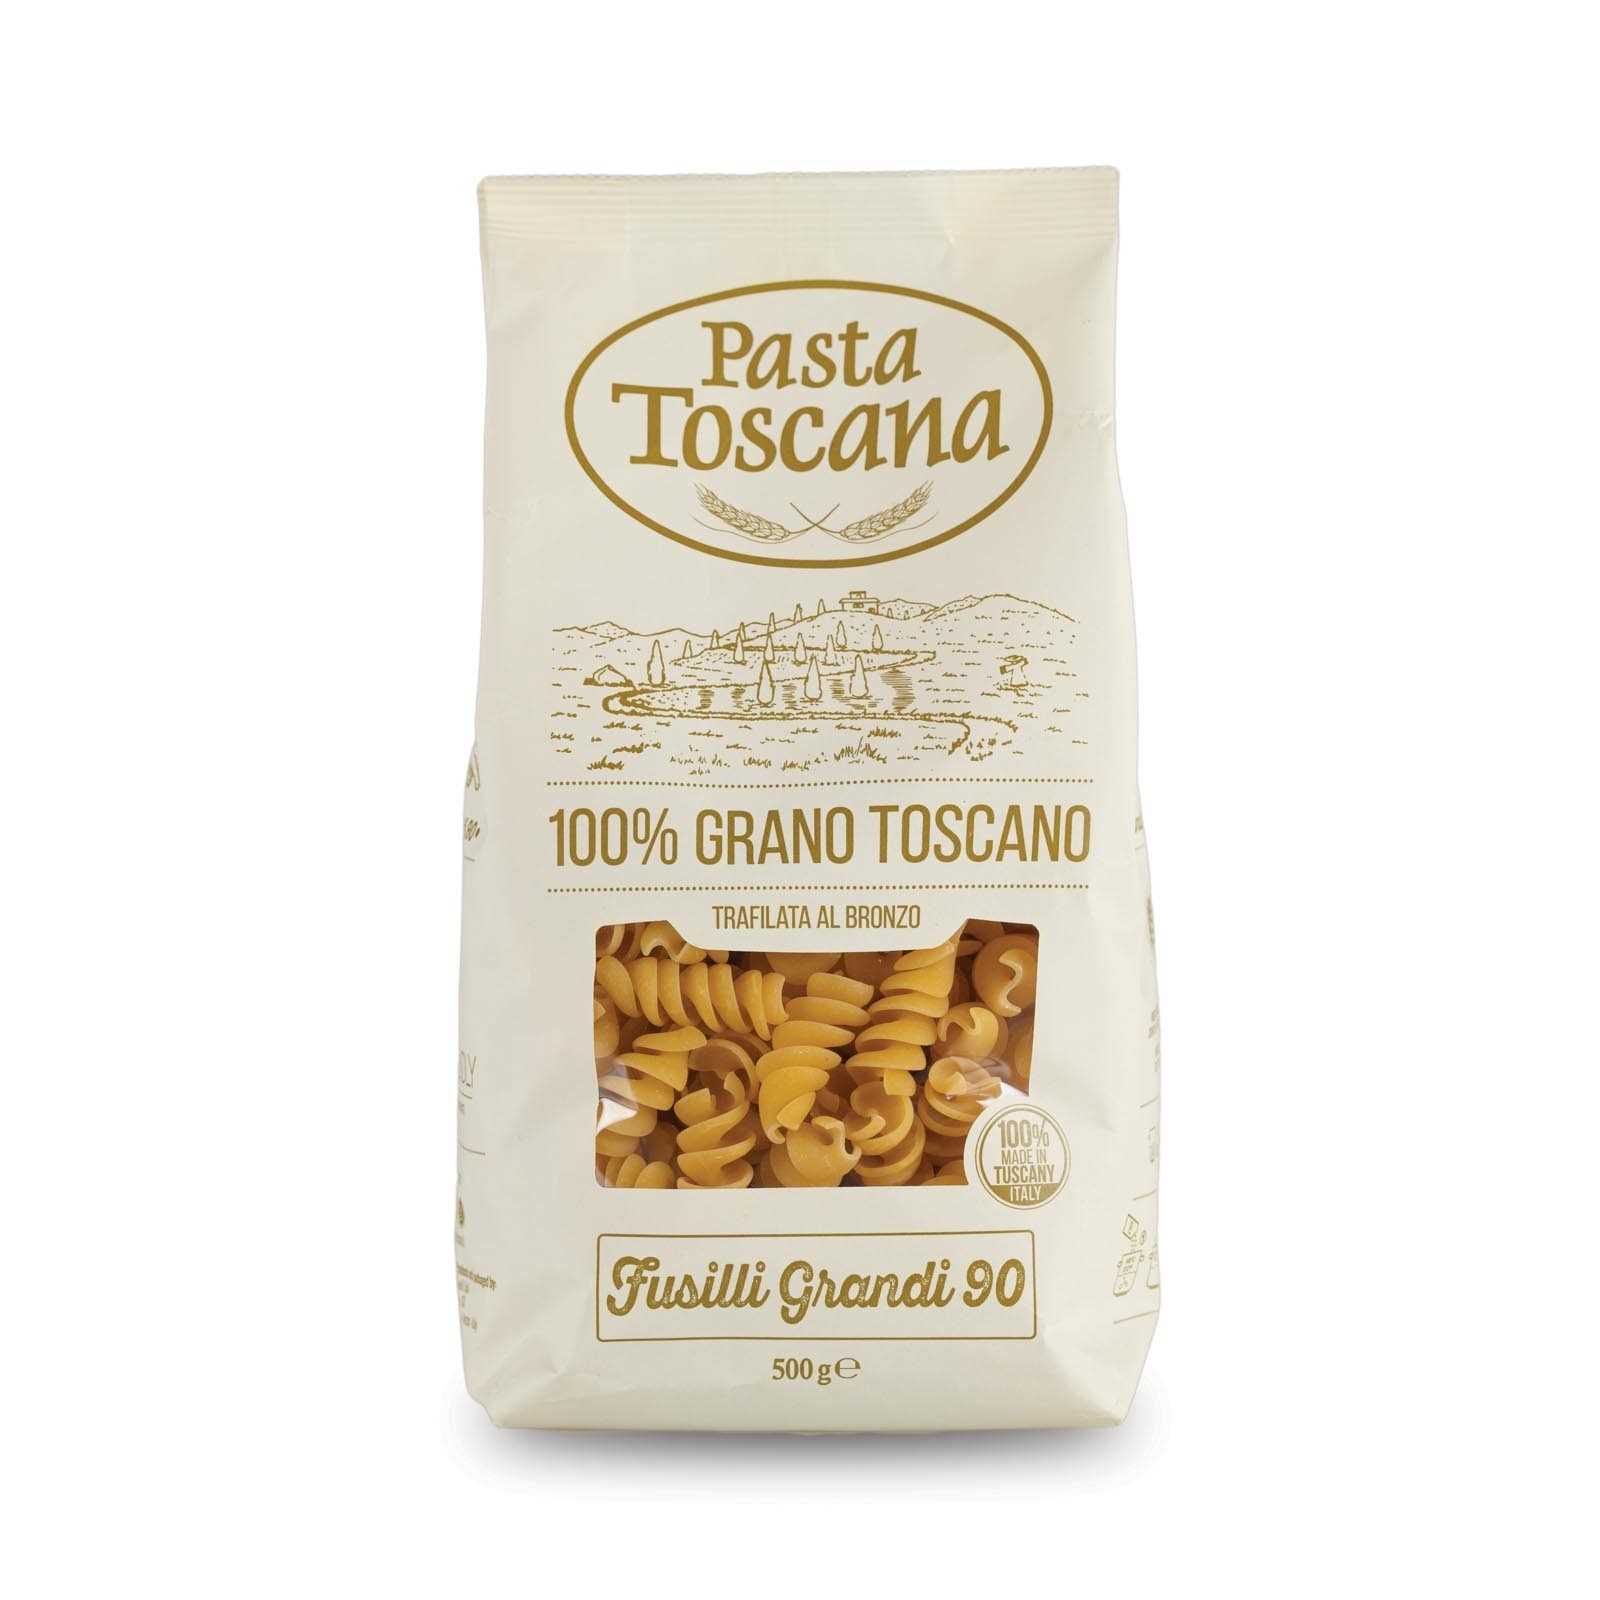 Tuscan durum wheat “Fusilli Grandi”, bronze drawn and slow drying.